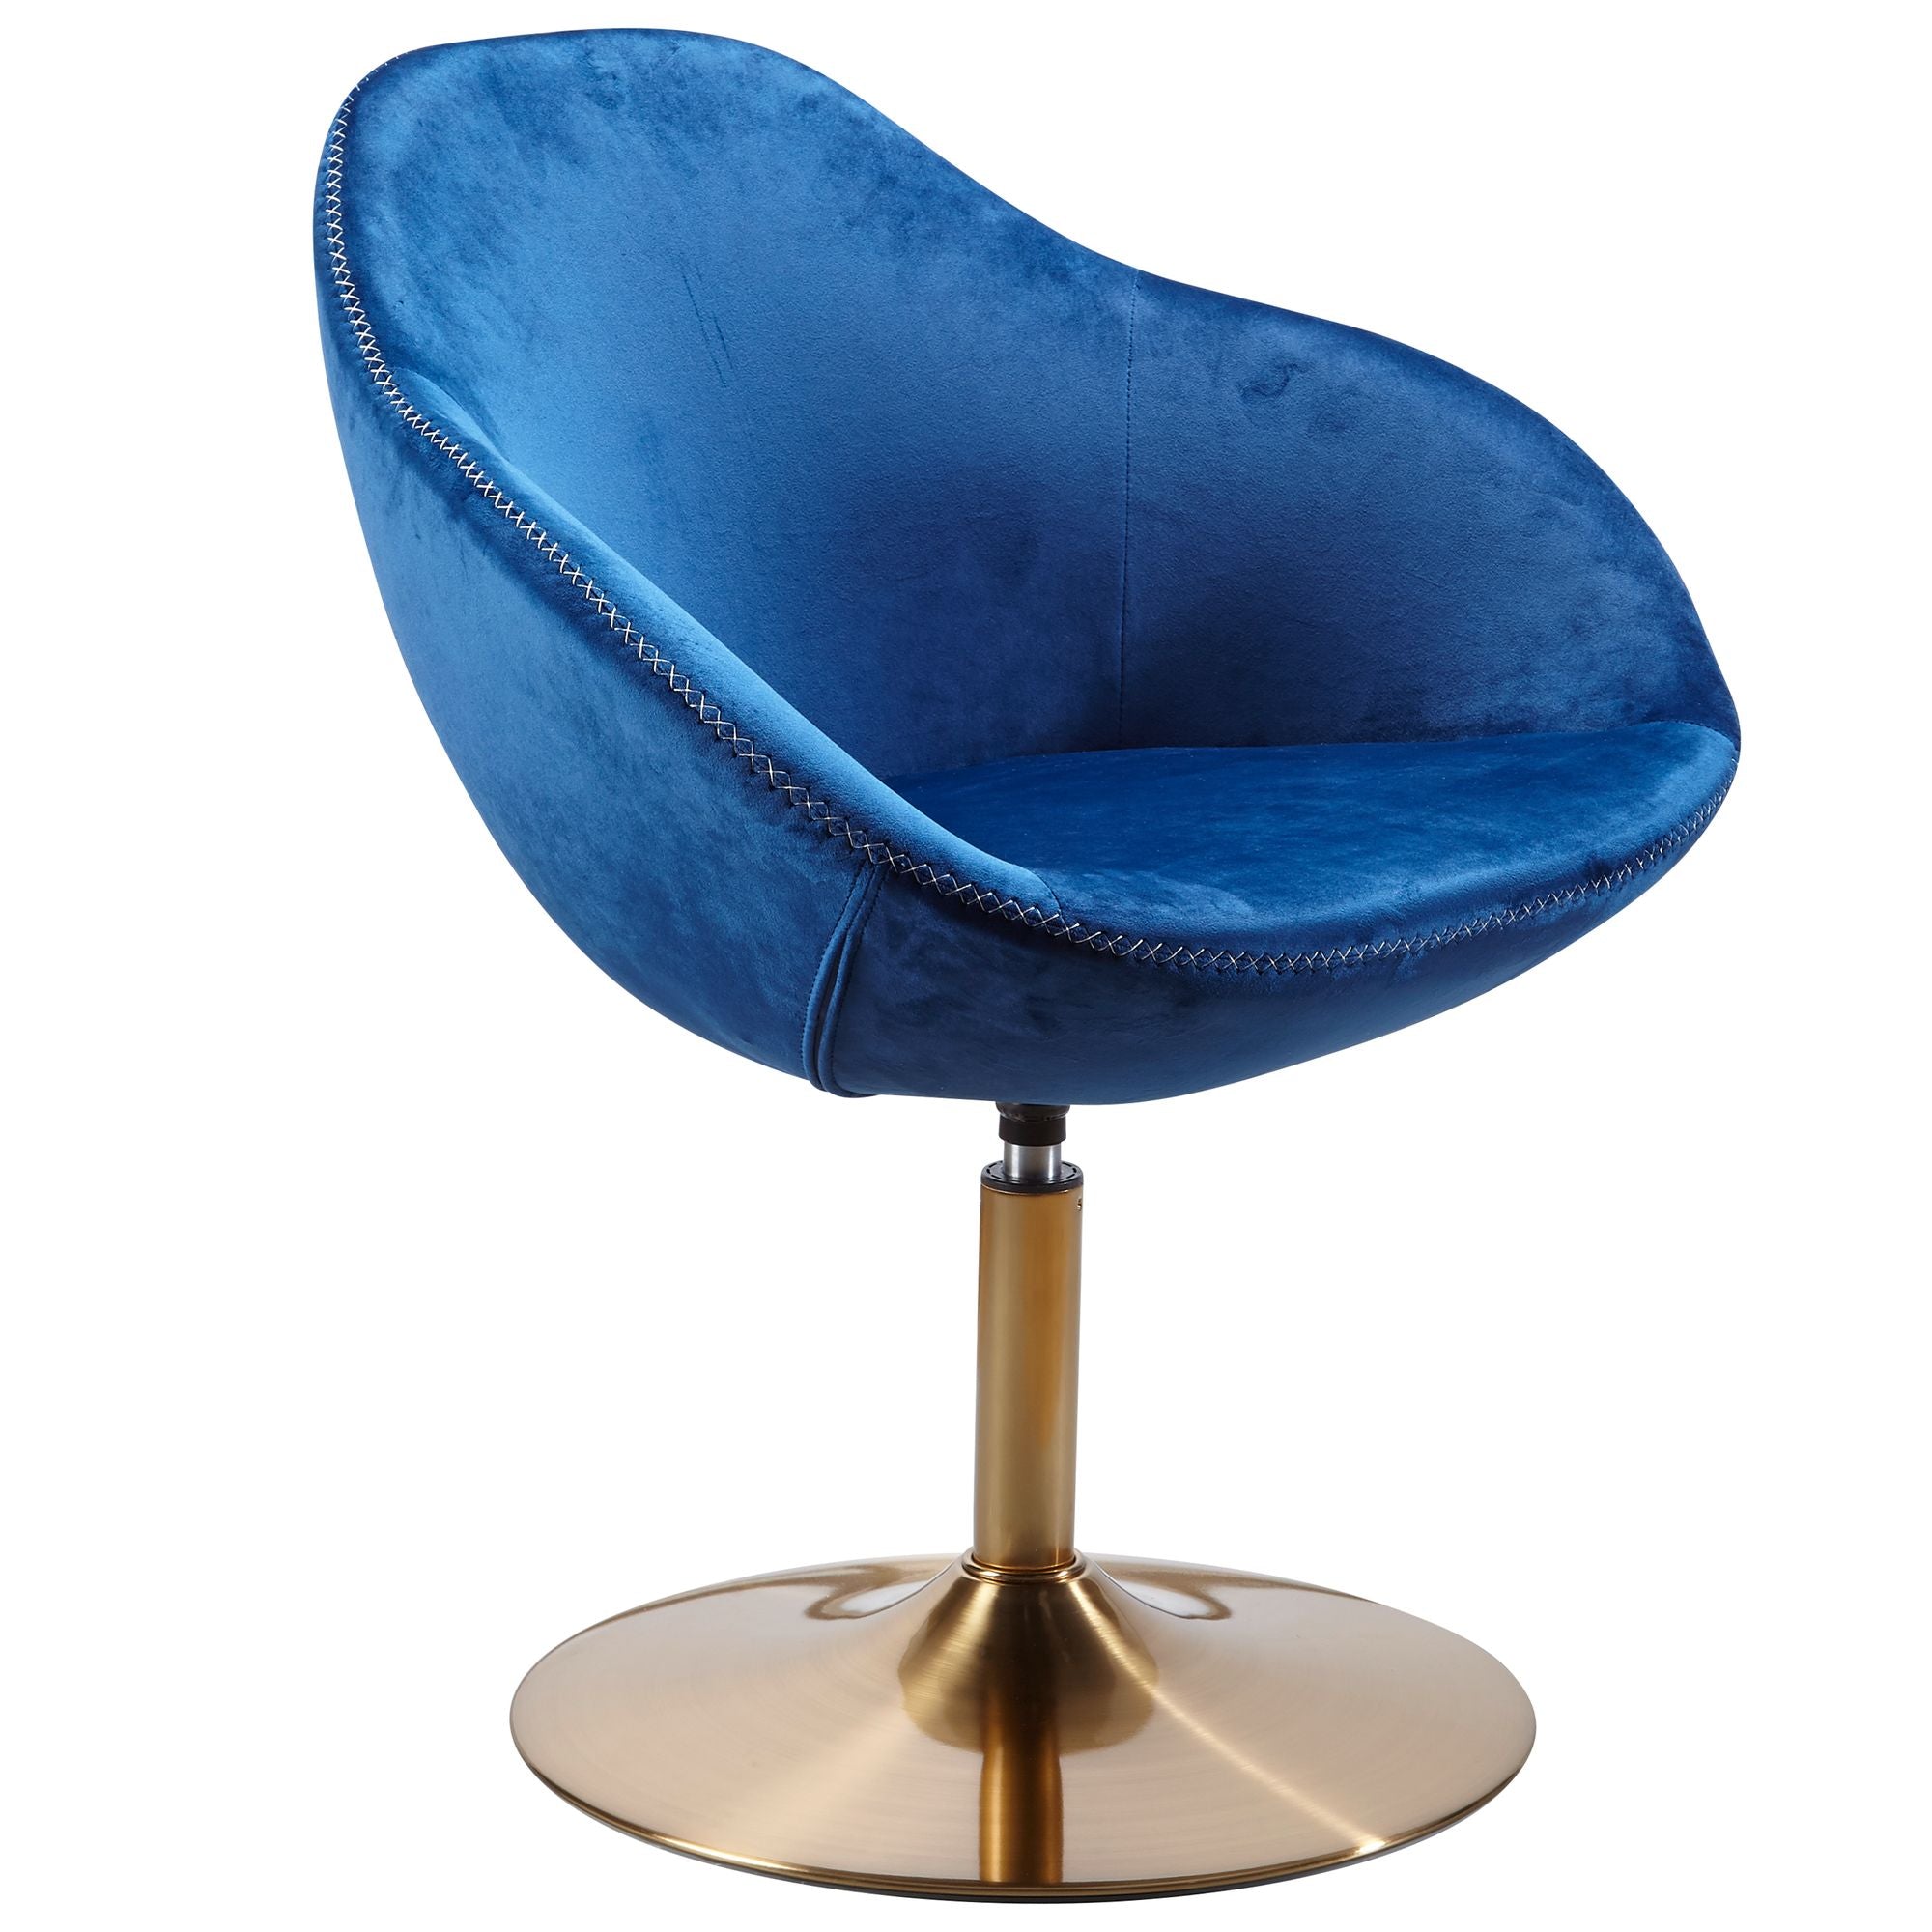 Nancy's Santa Fe Armchair - Chaise longue - Chaise baquet - Chaise de bureau - Fauteuil relax - Fauteuil en velours - Velours - Bleu